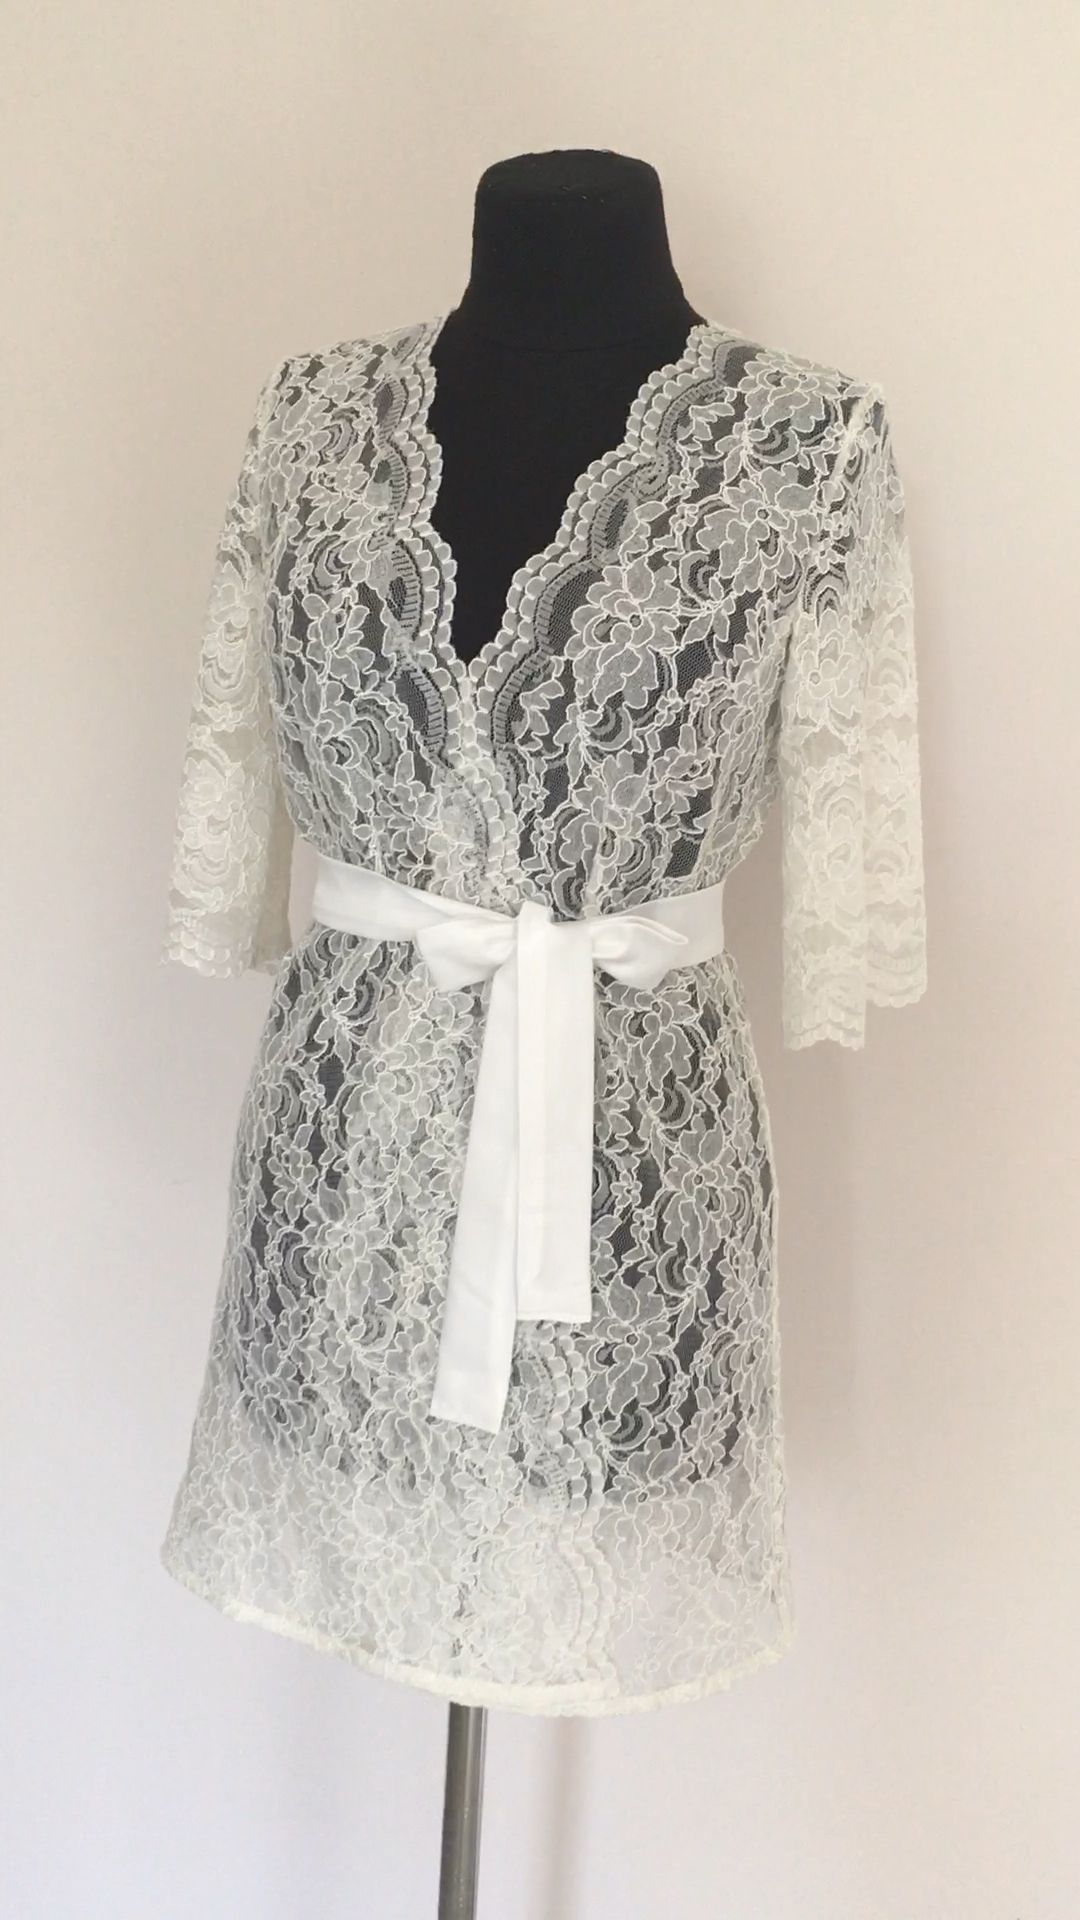 Ivory lace robe lace bridal robe lace wedding dress ivory | Etsy -   19 lace dress 2019 ideas